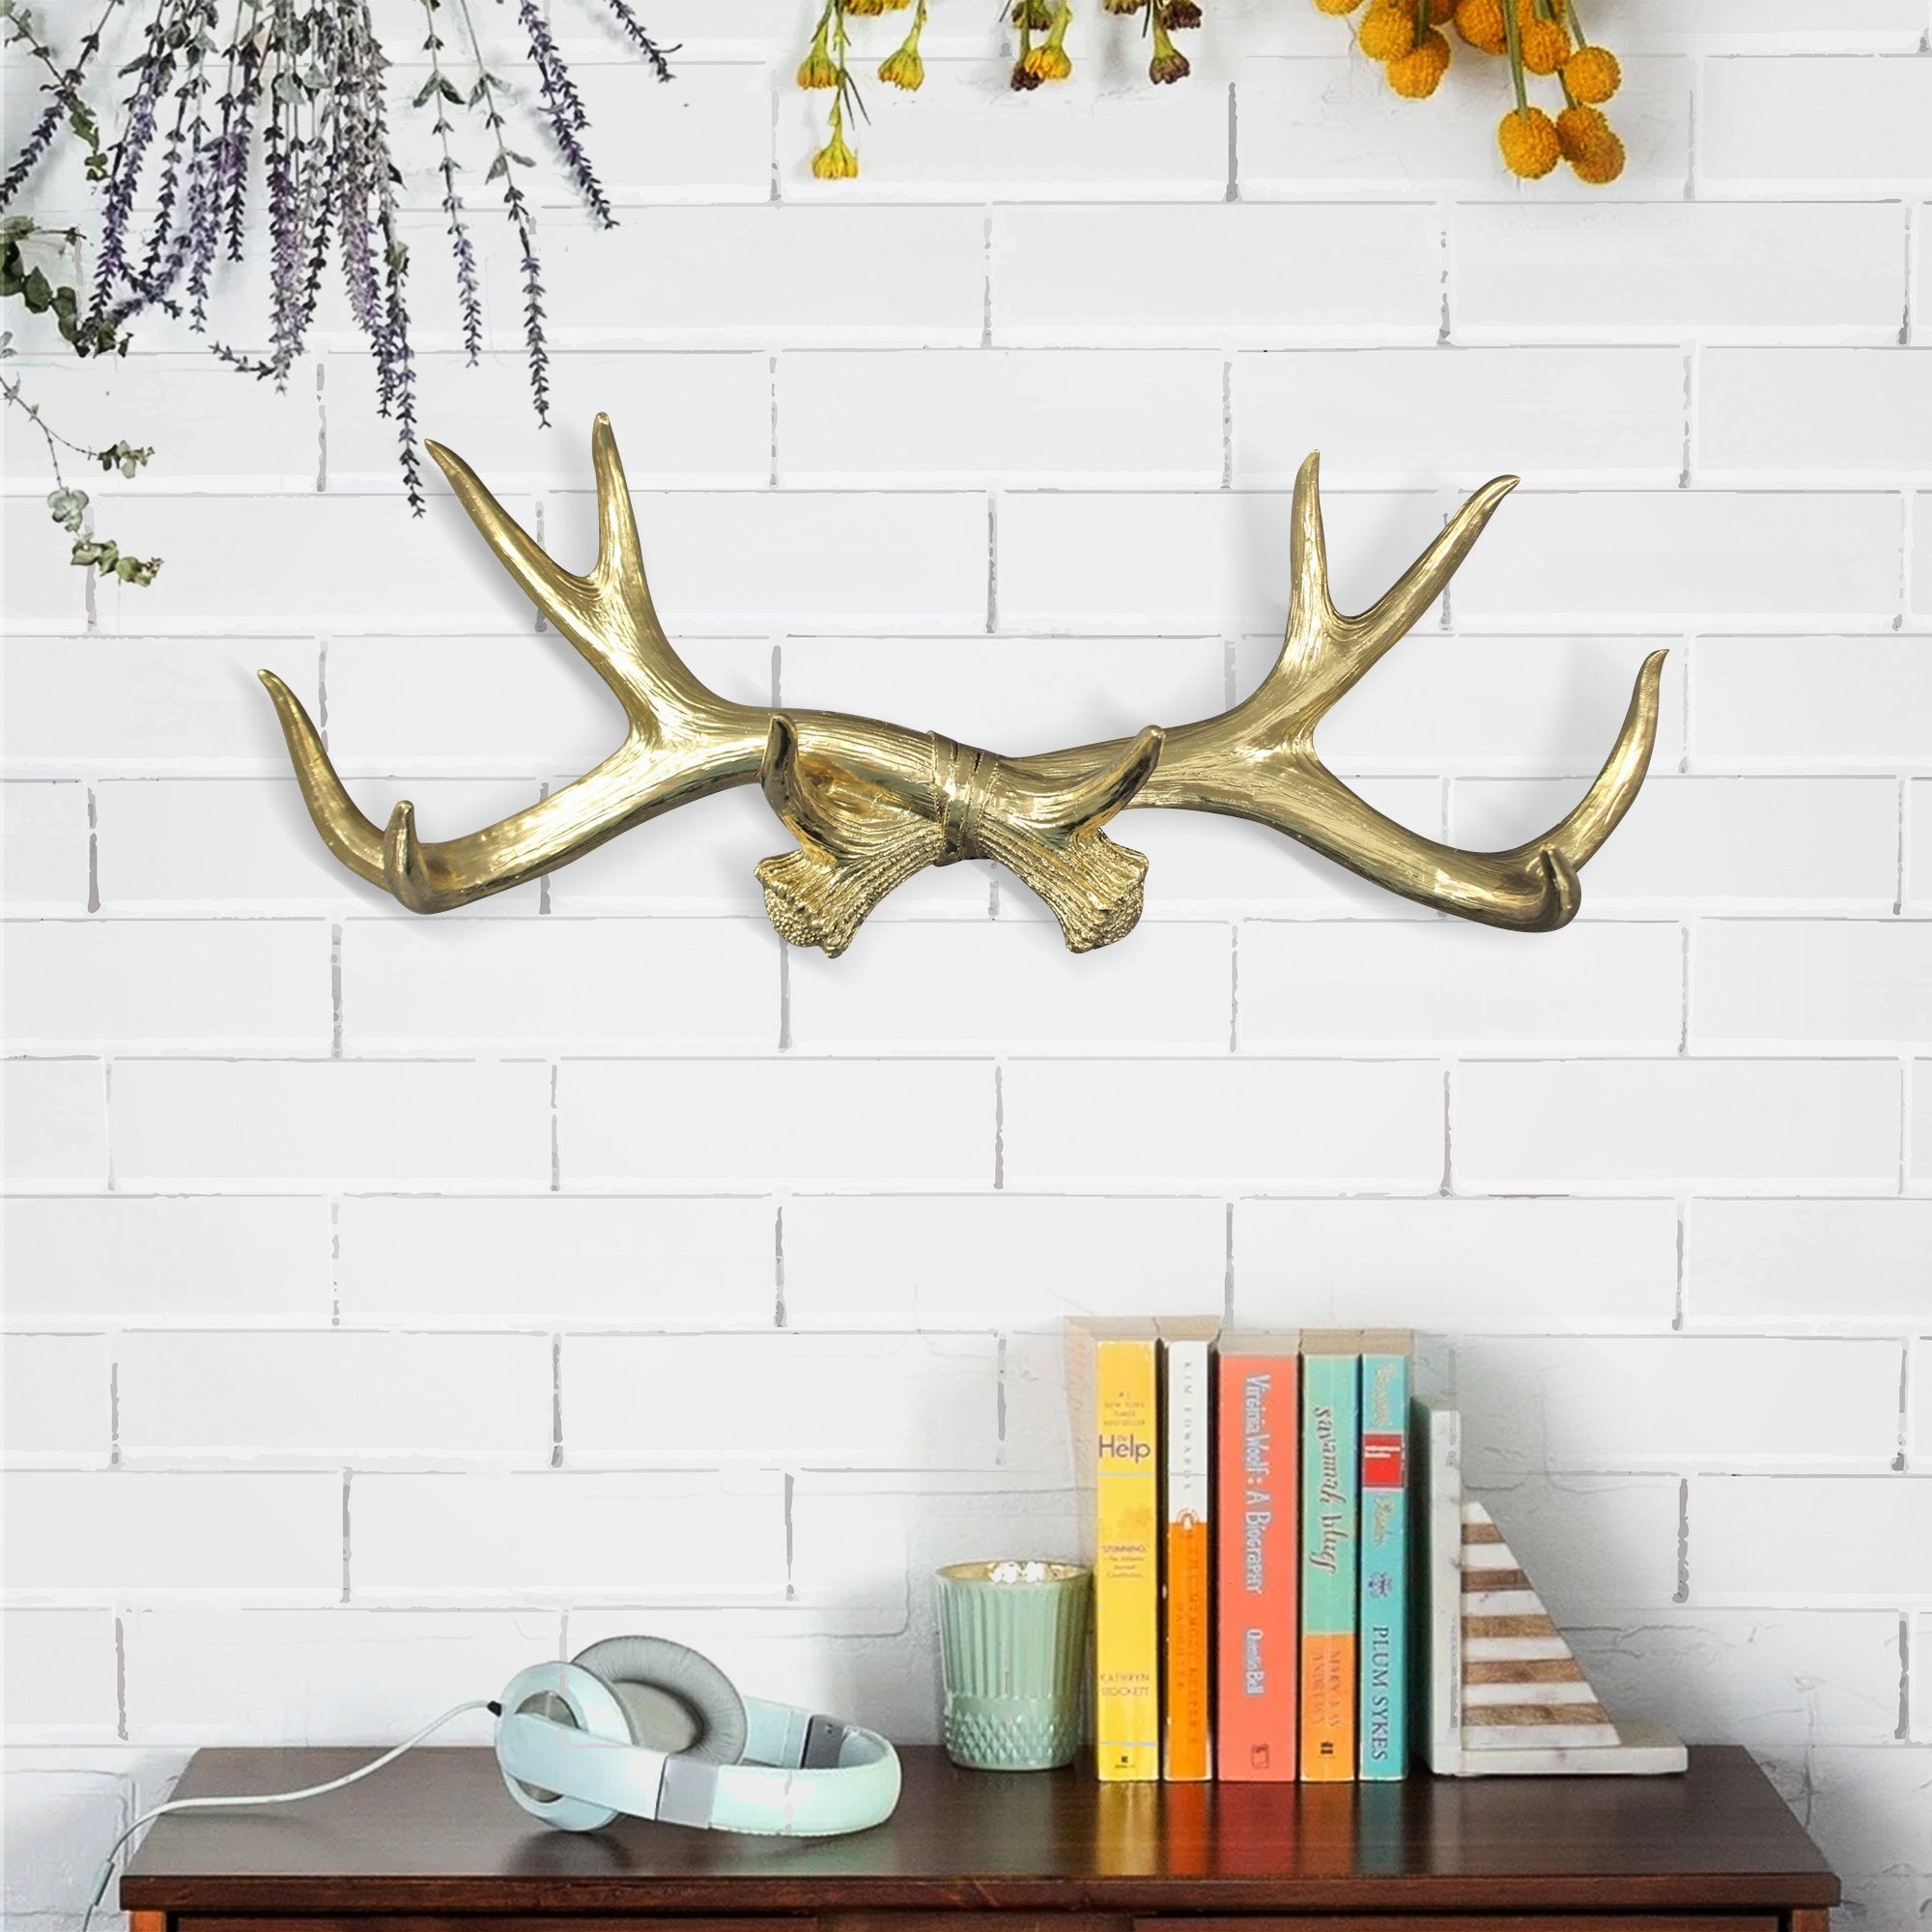 Faux antlers, deer antlers, faux deer antlers, antlers wall rack, antlers wall hooks, fake antler wall rack, antlers wall mount, farmhouse decor